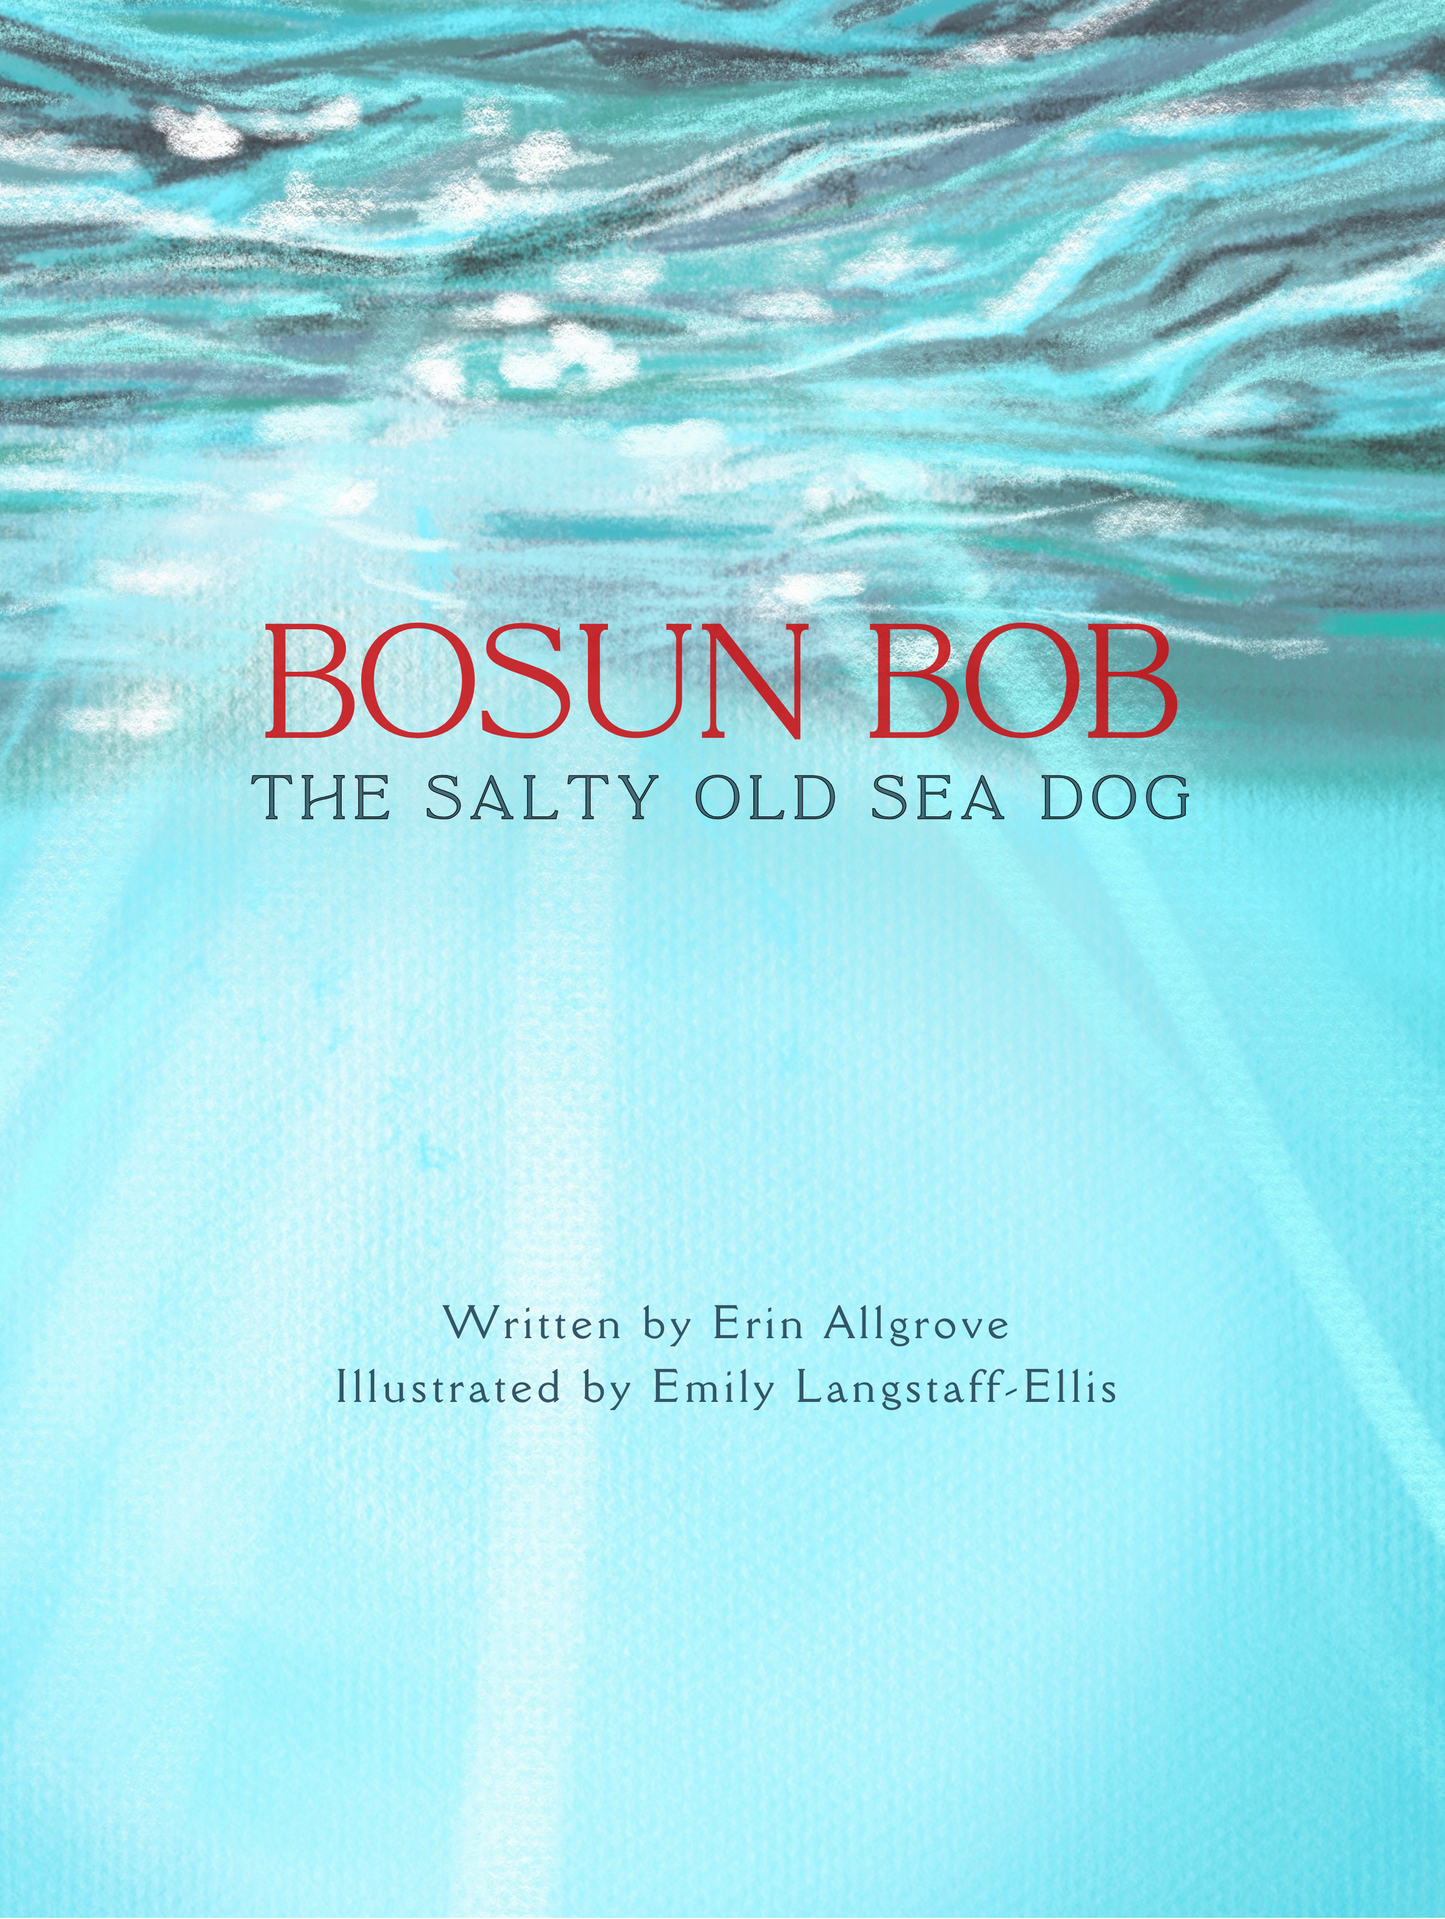 Bosun Bob, The Salty Old Sea Dog